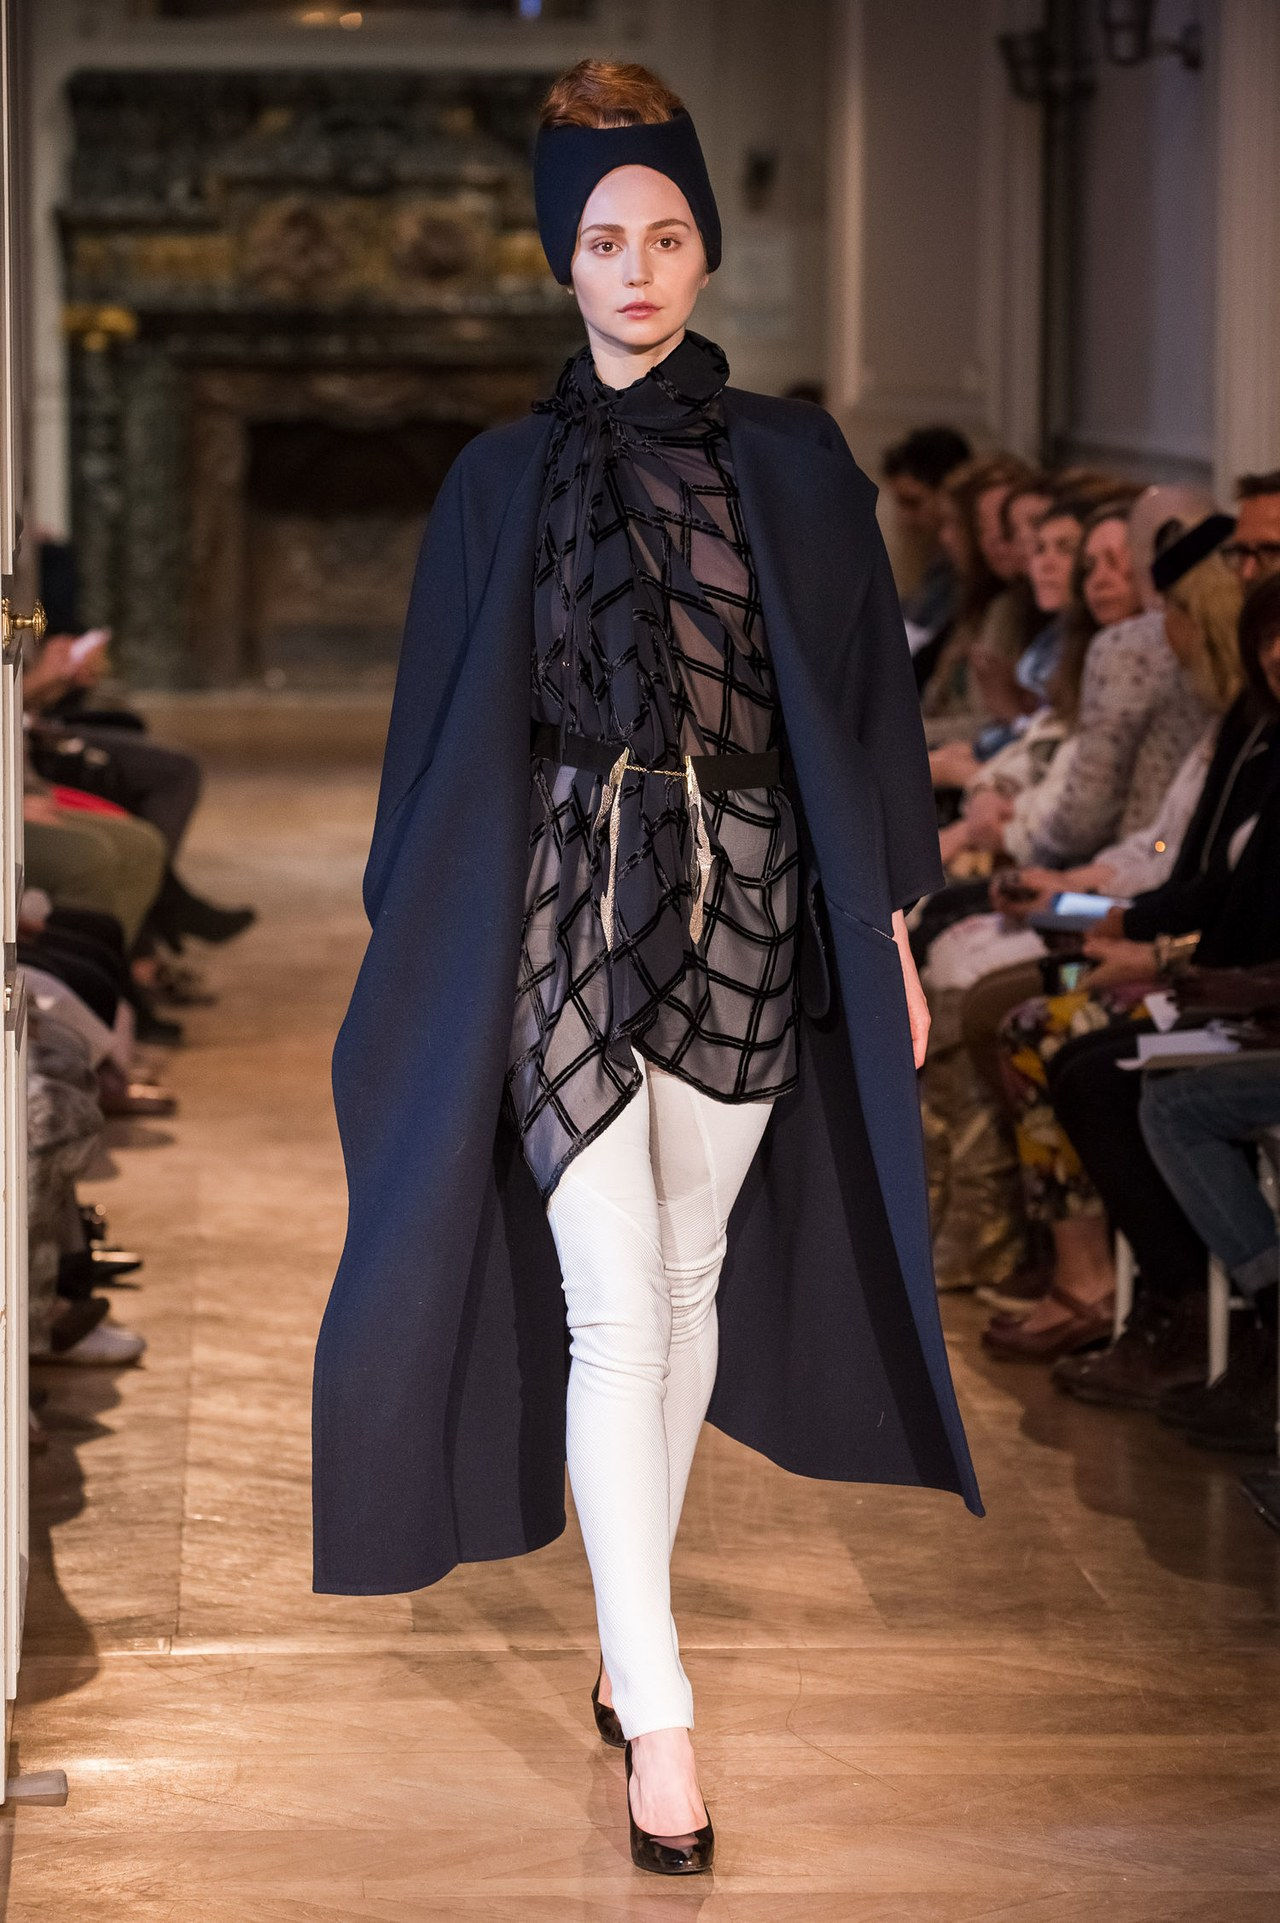 ستيفاني coudert couture runway show 2014 sheer top